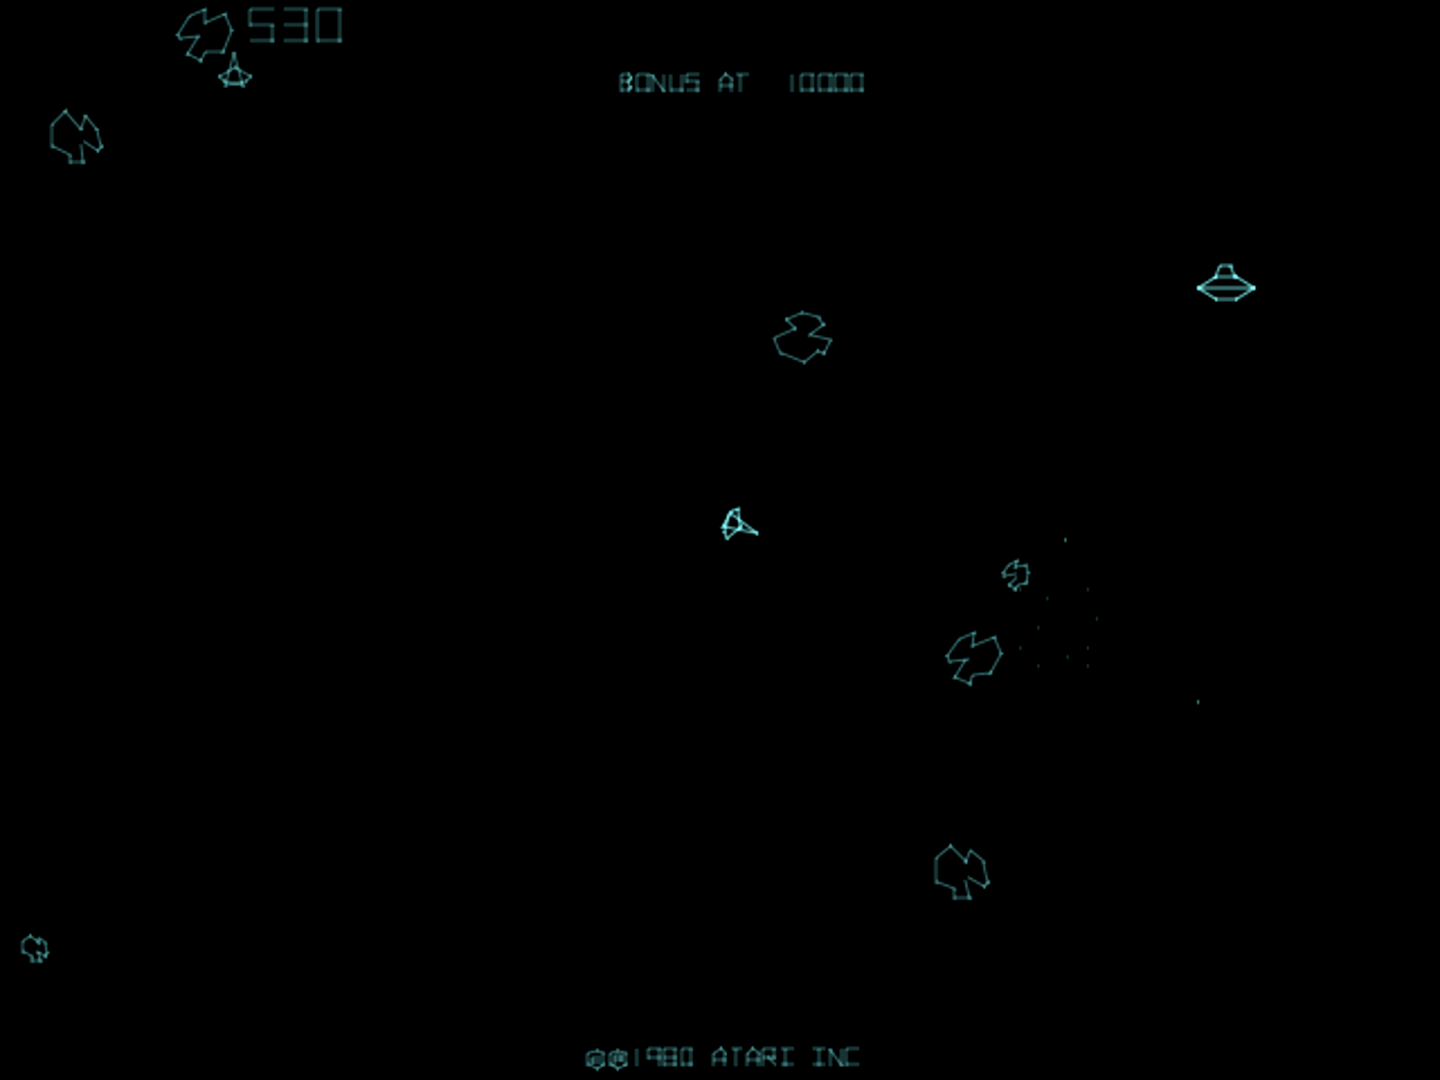 Asteroids Deluxe screenshot